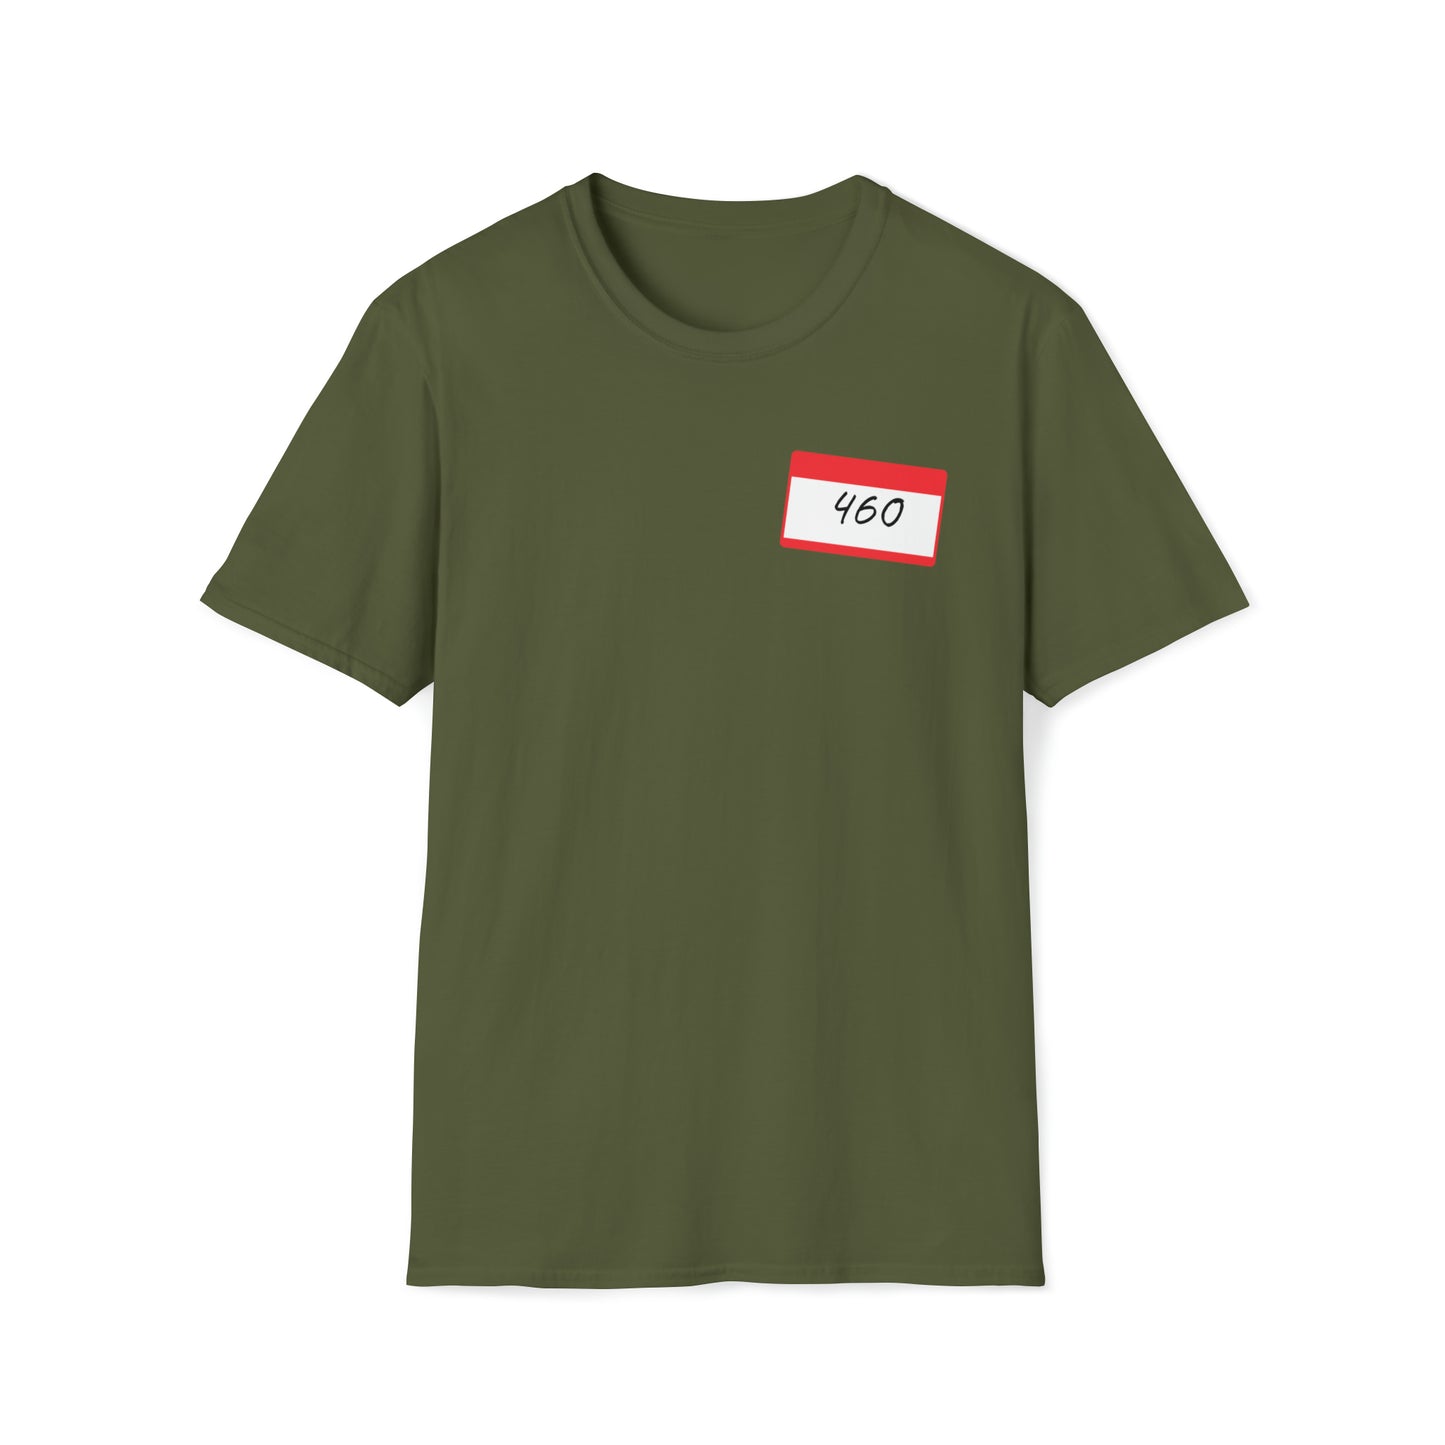 460 Unisex Softstyle T-Shirt